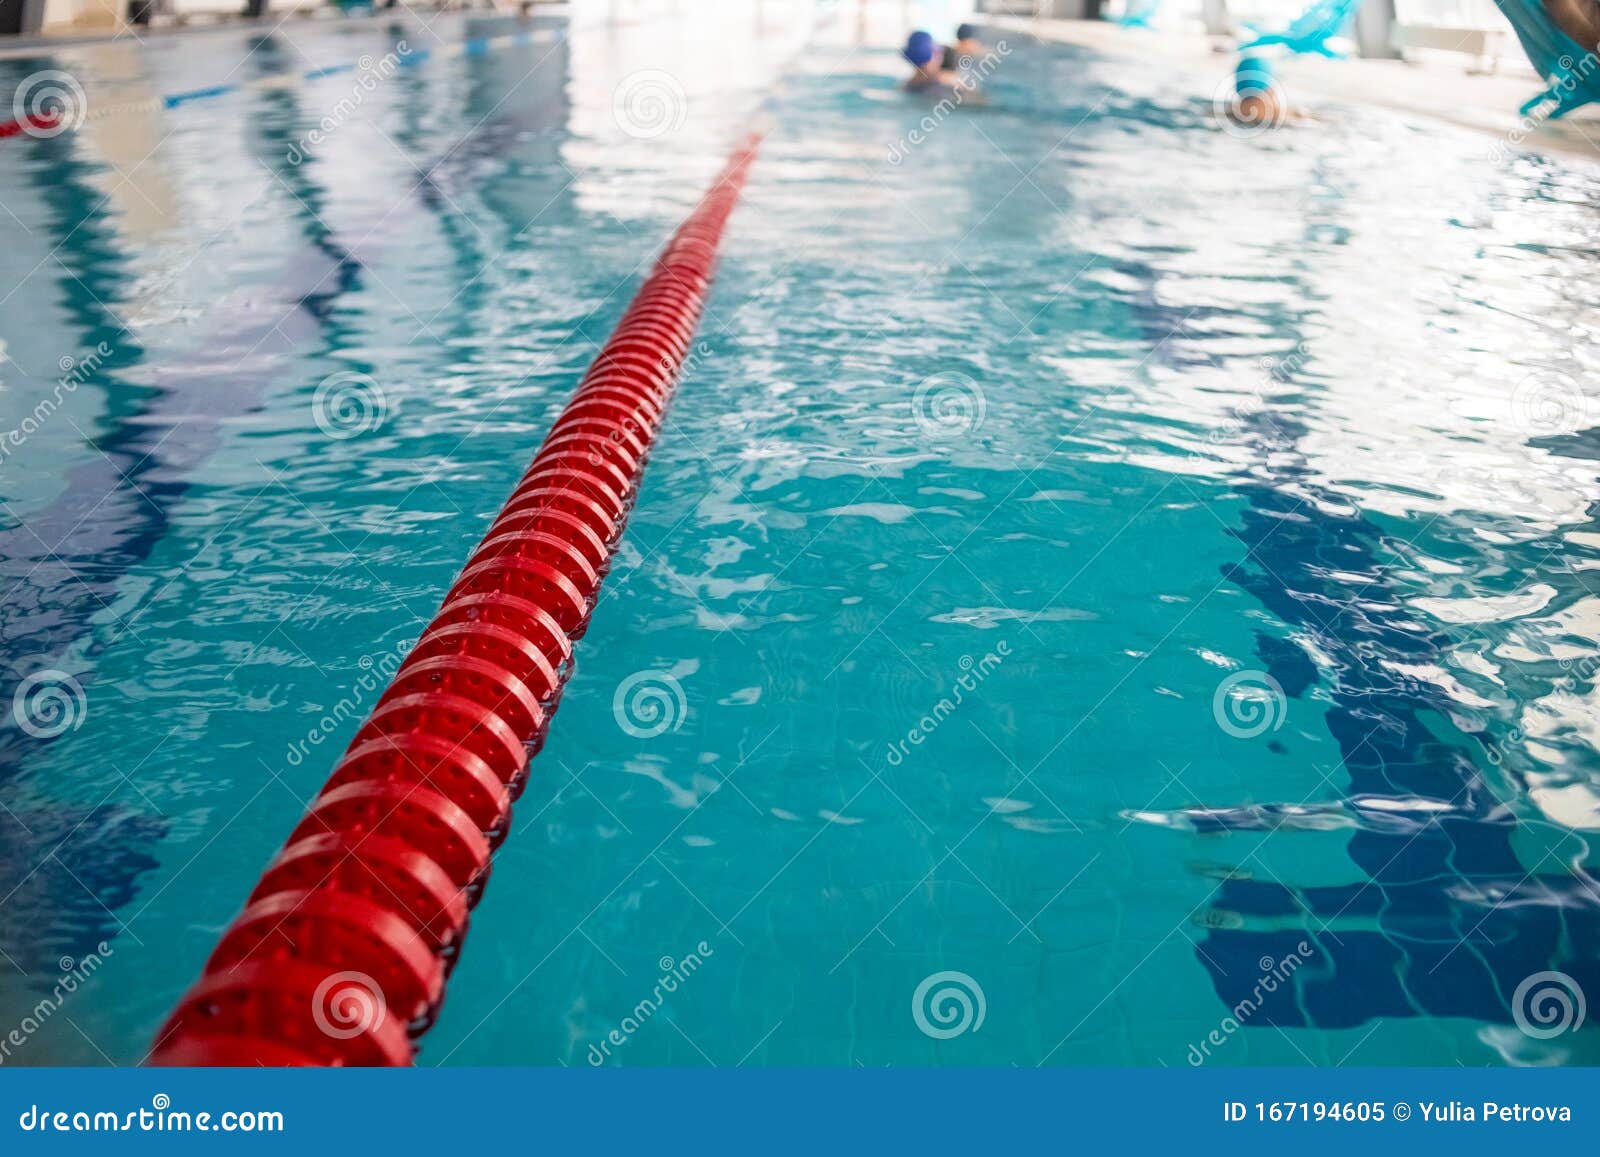 Recensent stoel Dusver Zwembaden in Wedstrijdpool Rode Plastic Touw Op De Blauwe Wimpel in Het  Zwembad Stock Afbeelding - Image of patroon, recreatie: 167194605